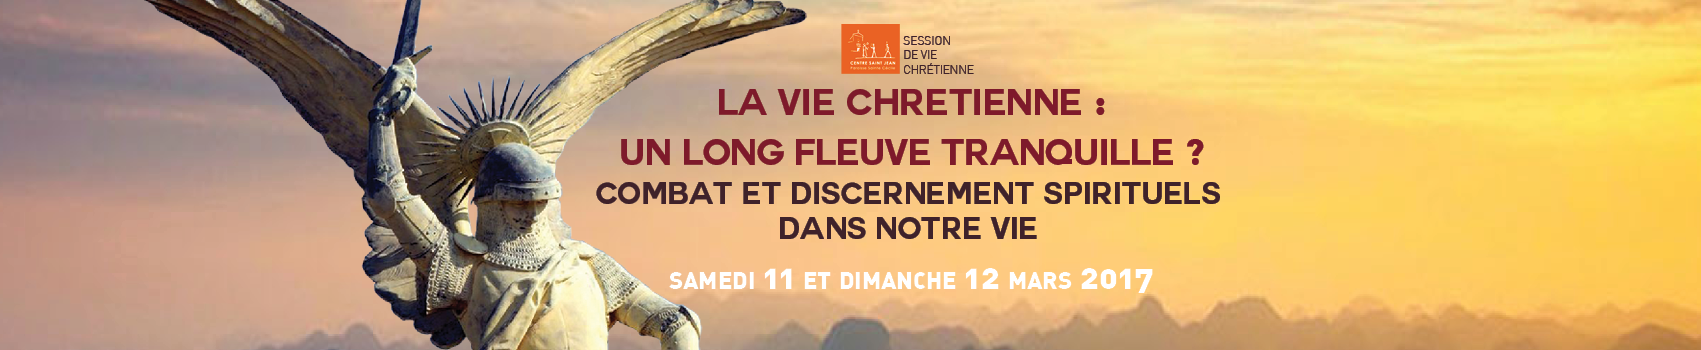 « Combat et discernement spirituels dans nos vies » : session de formation au centre St Jean à Boulogne